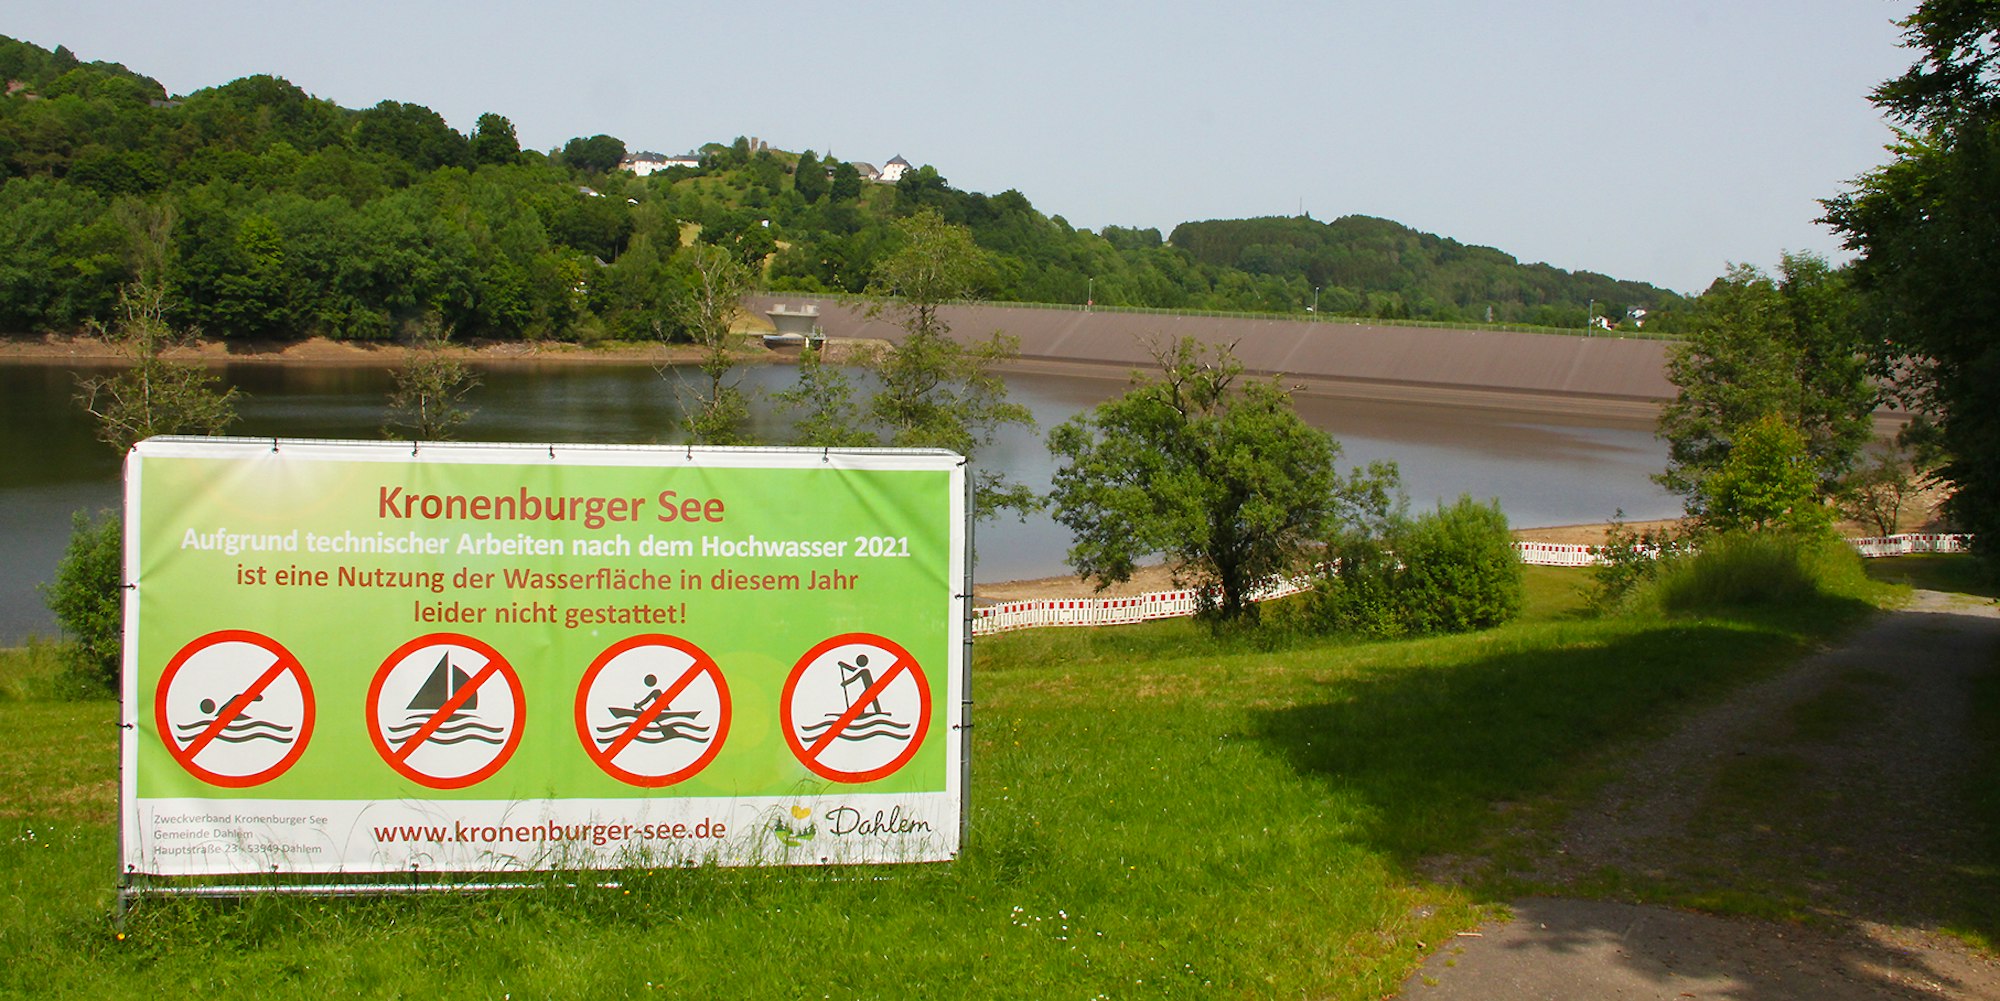 Was nicht geht: Absperrbaken und Transparente weisen auf die Sperrung des Kronenburger See in diesem Sommer hin.